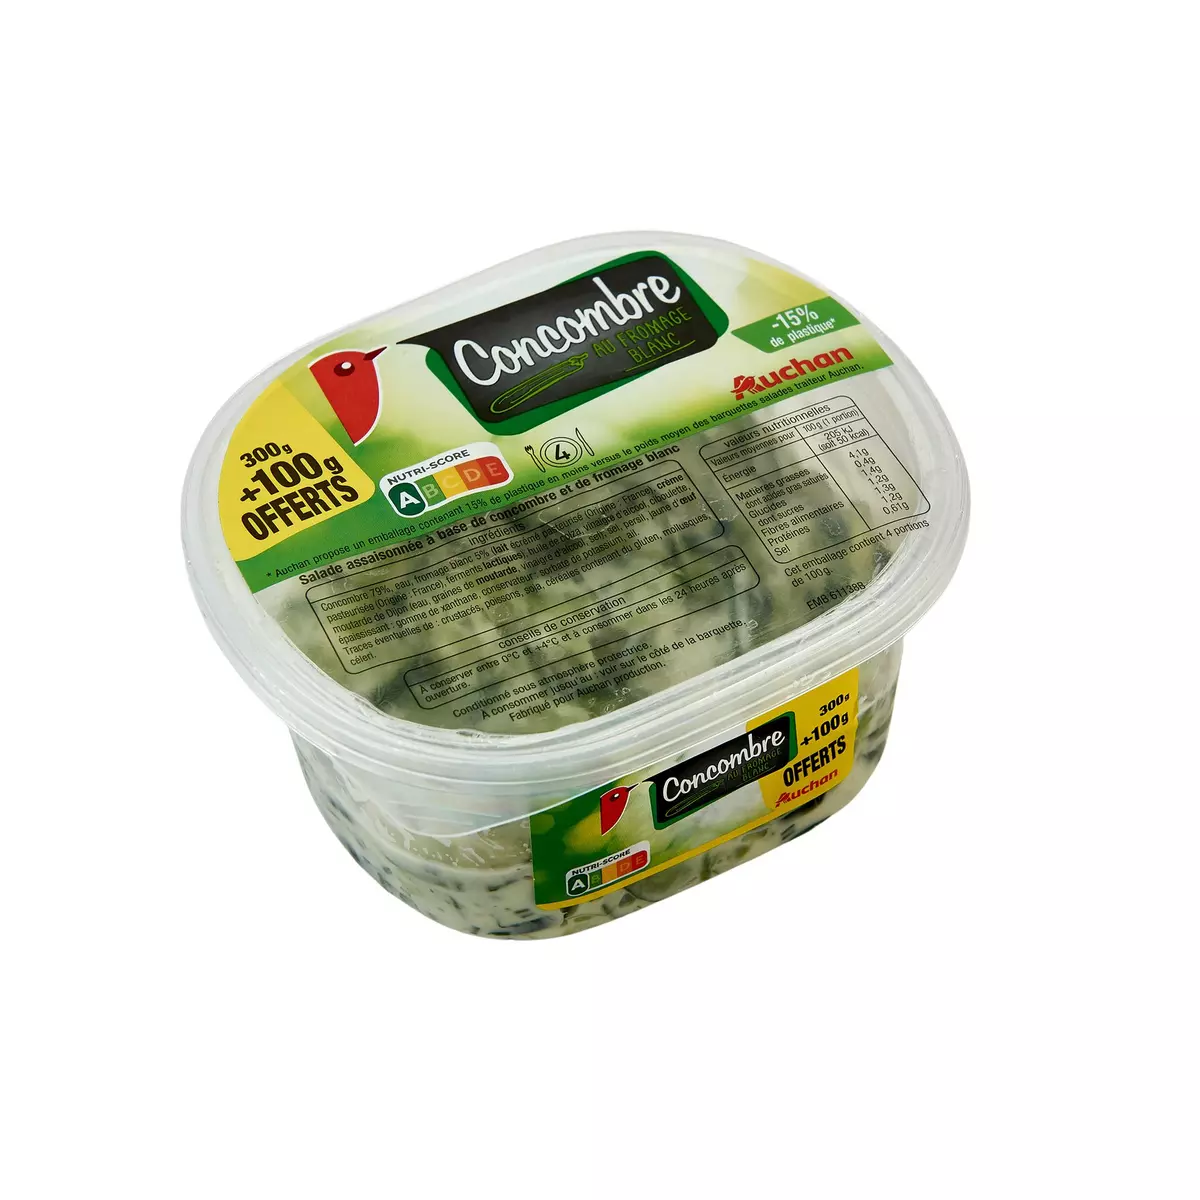 AUCHAN Salade de concombre au fromage blanc 300g +100g offert